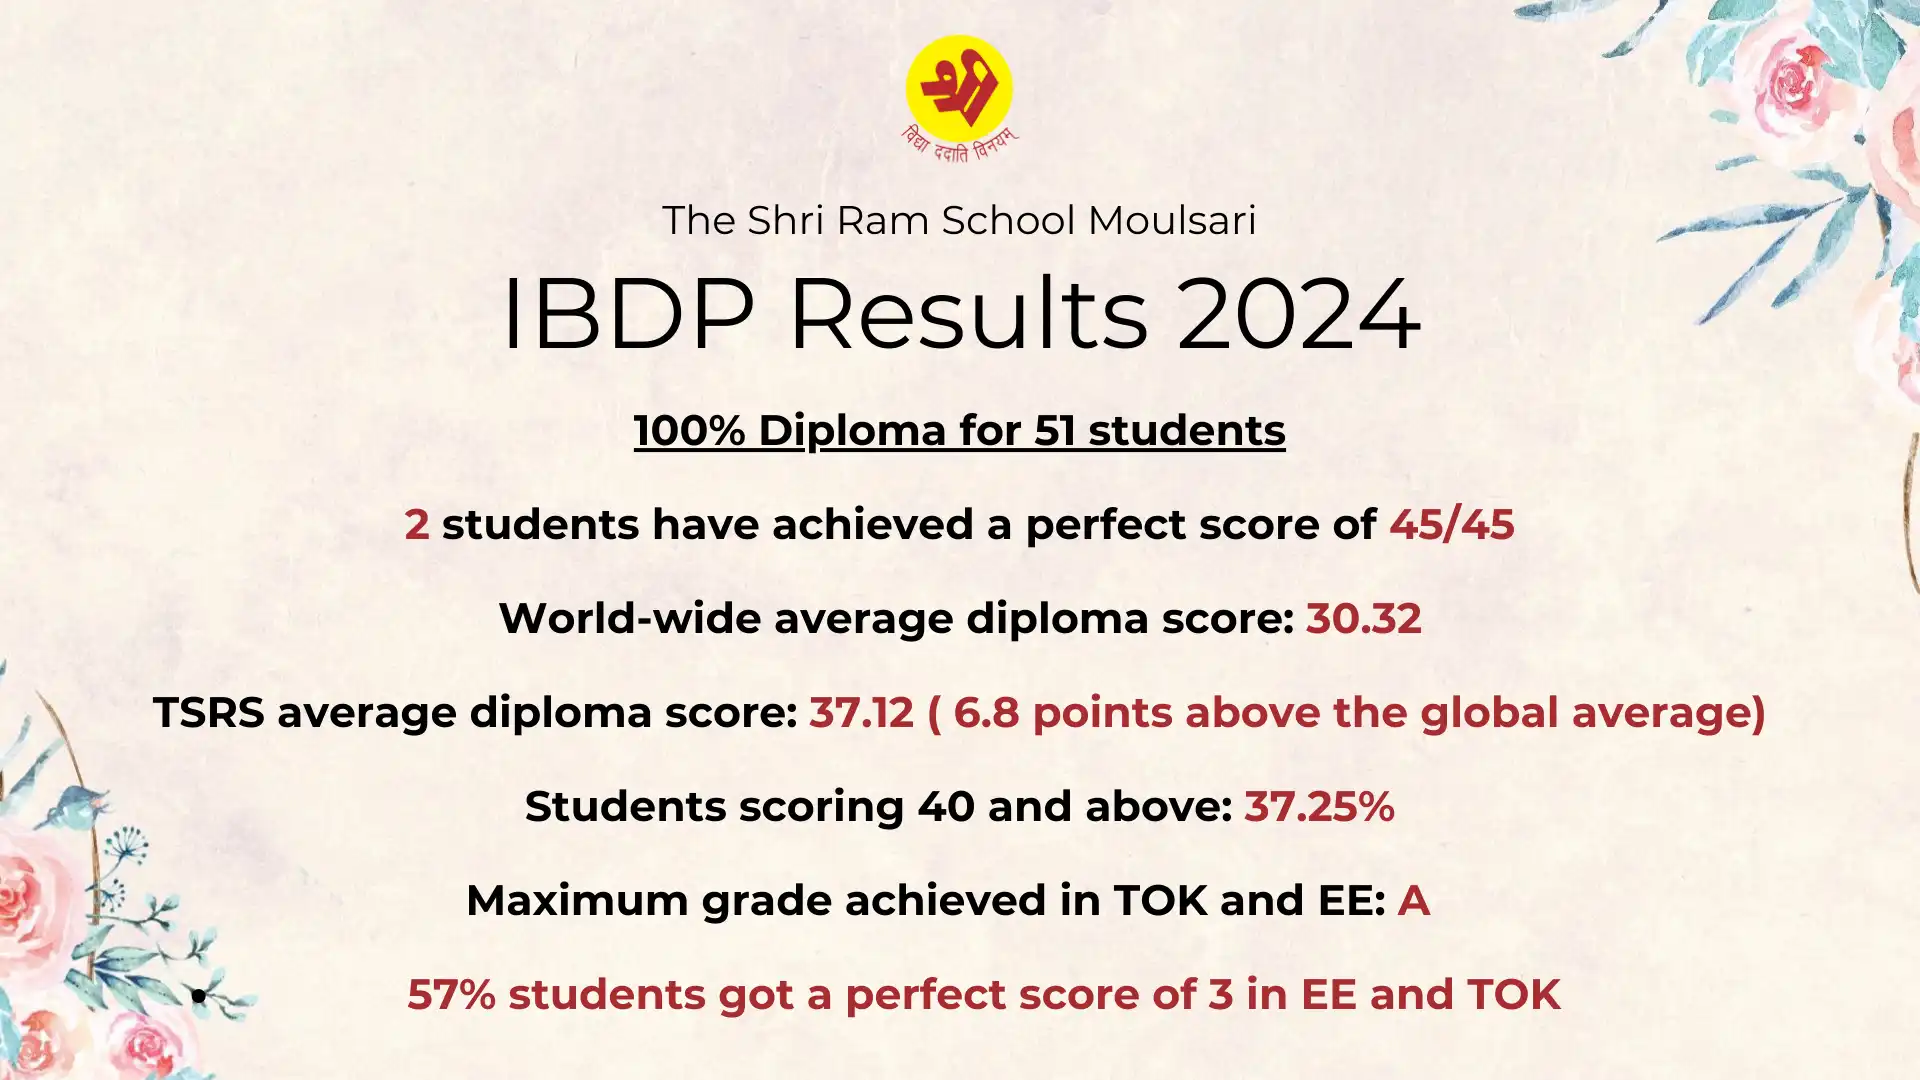 IBDP Results 2024 - 1